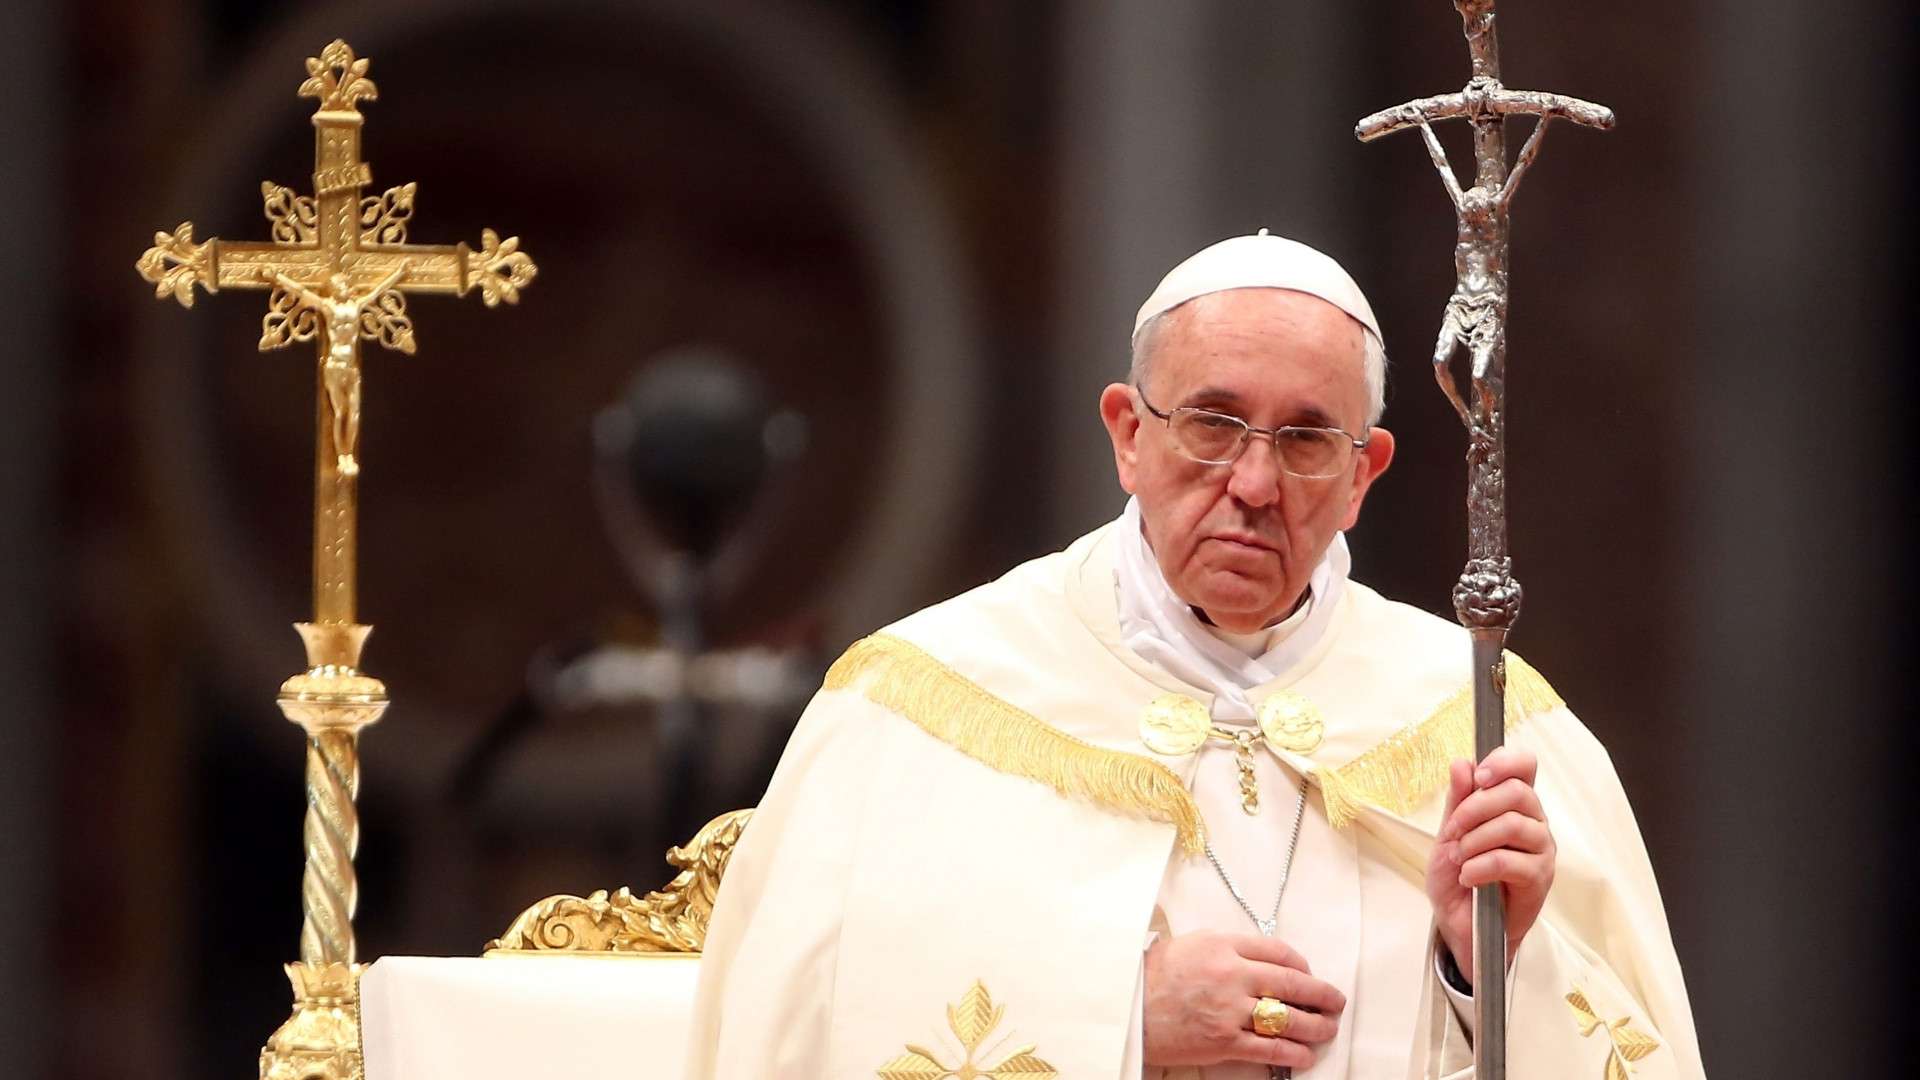 Հռոմի Պապն աղոթում է աշխարհում ռազմագերիներին ազատ արձակելու համար